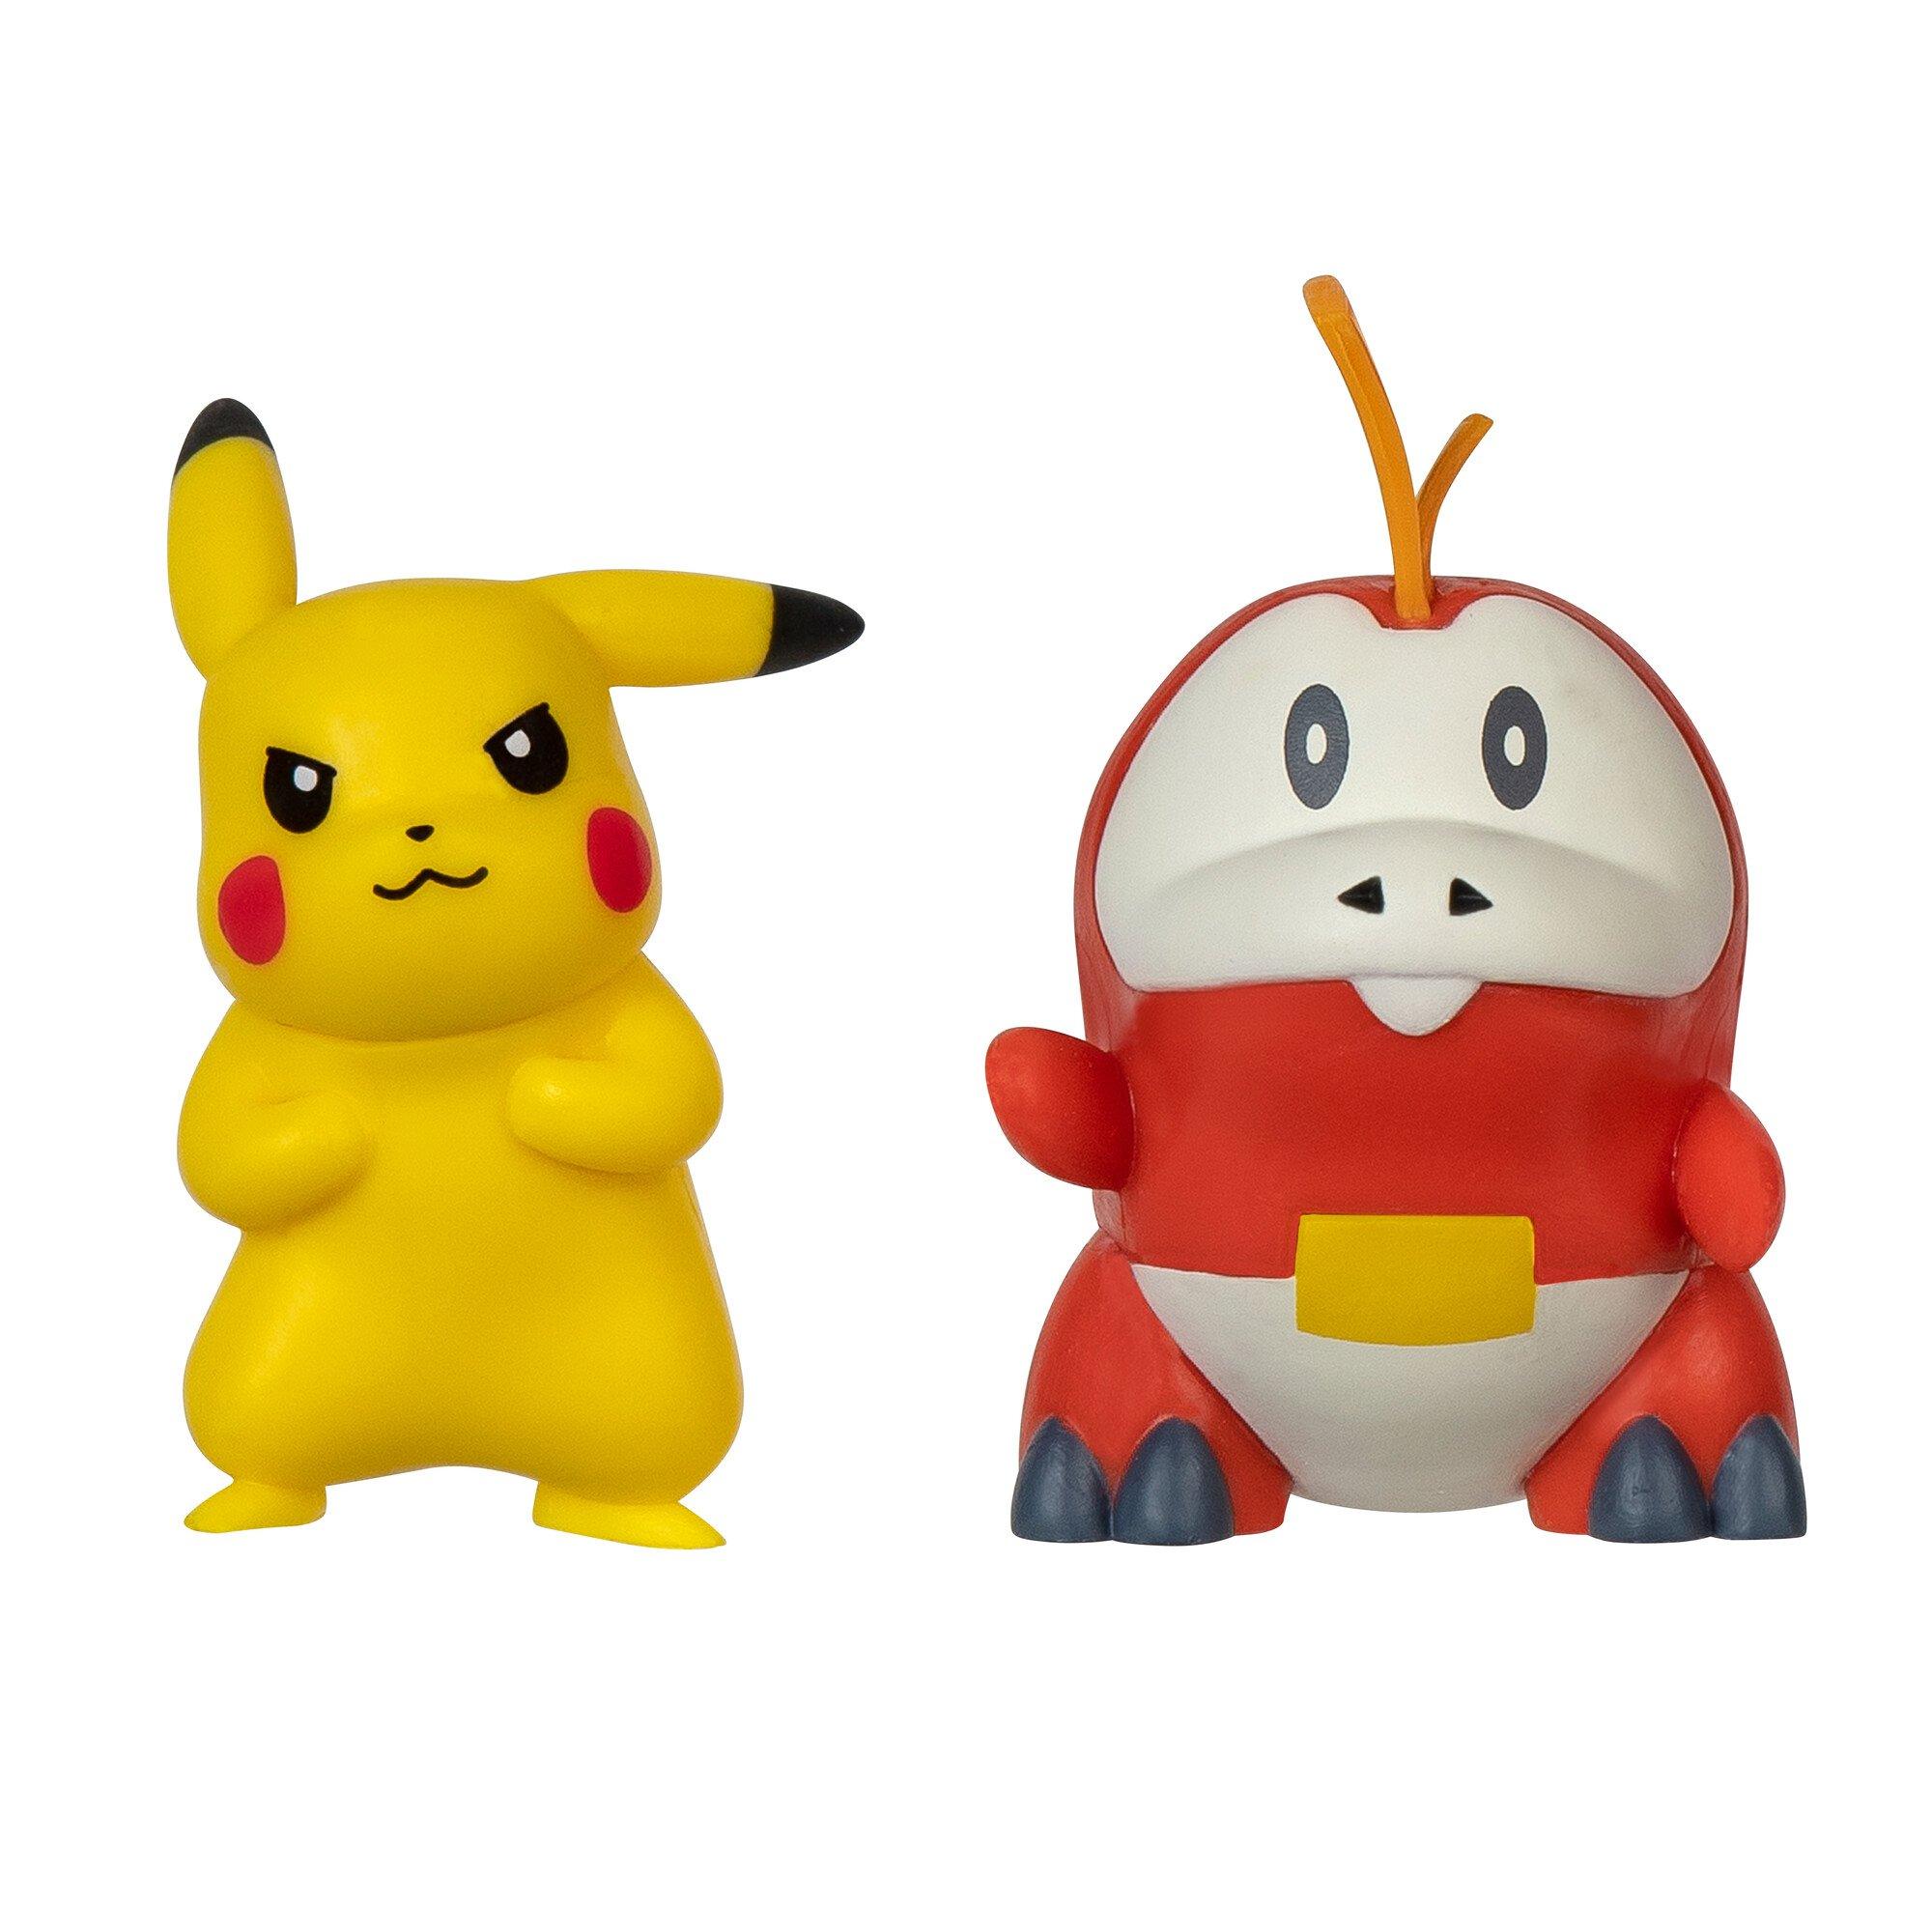 Brinquedo Similar Ou Parecido com Lego do Pokémon